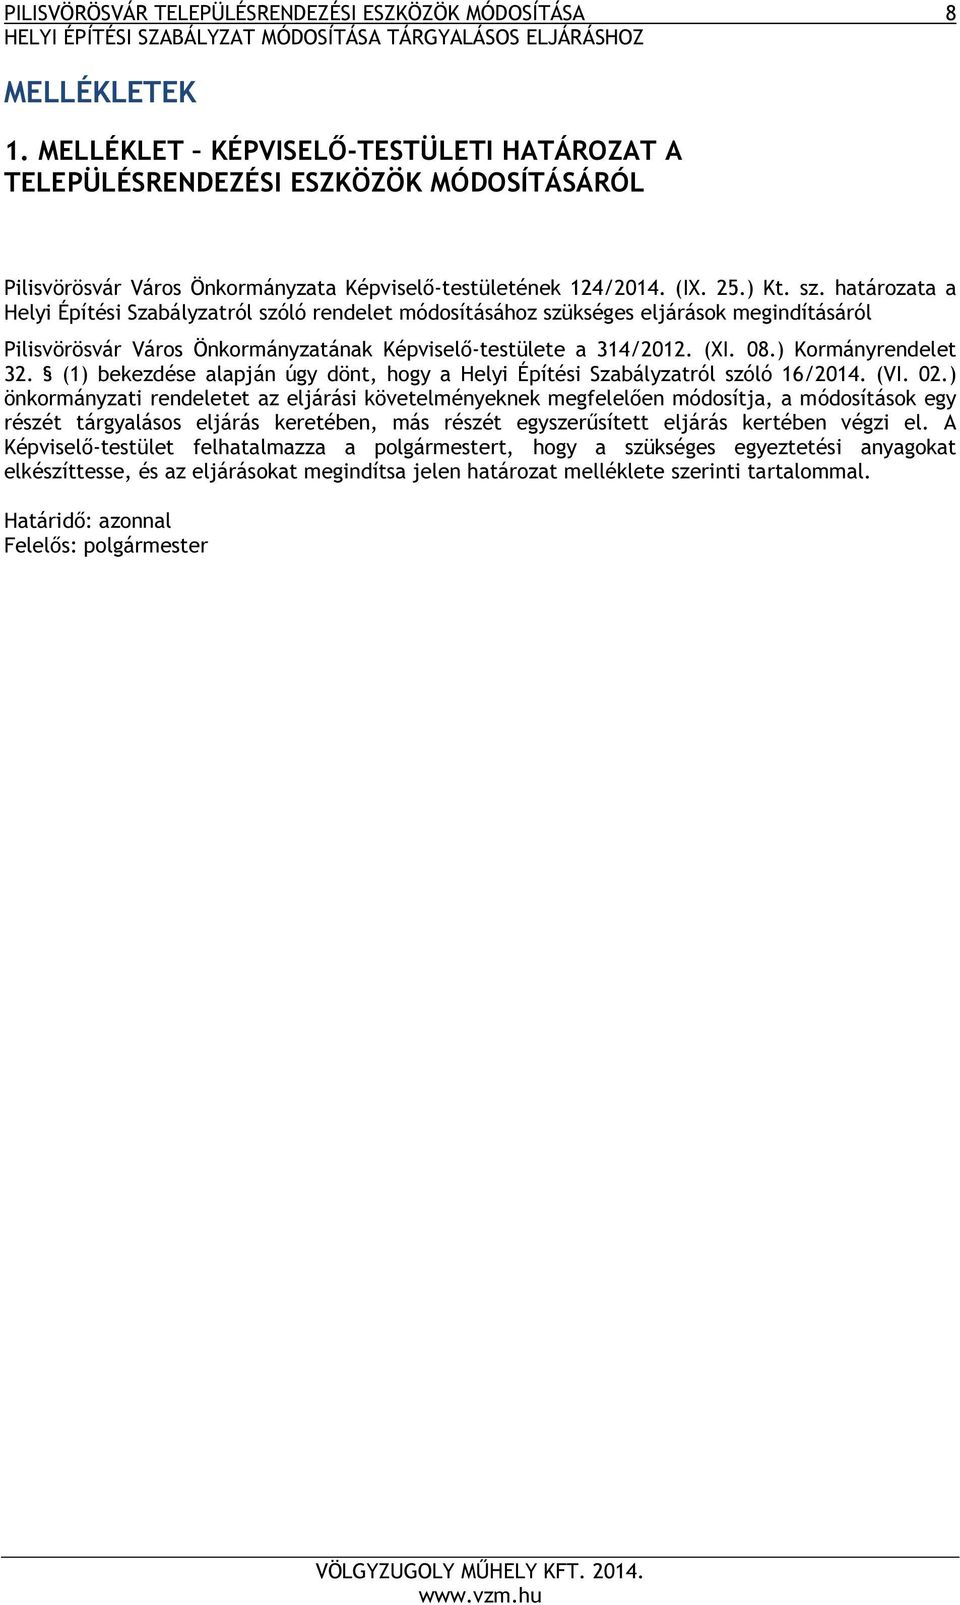 határozata a Helyi Építési Szabályzatról szóló rendelet módosításához szükséges eljárások megindításáról Pilisvörösvár Város Önkormányzatának Képviselő-testülete a 314/2012. (XI. 08.